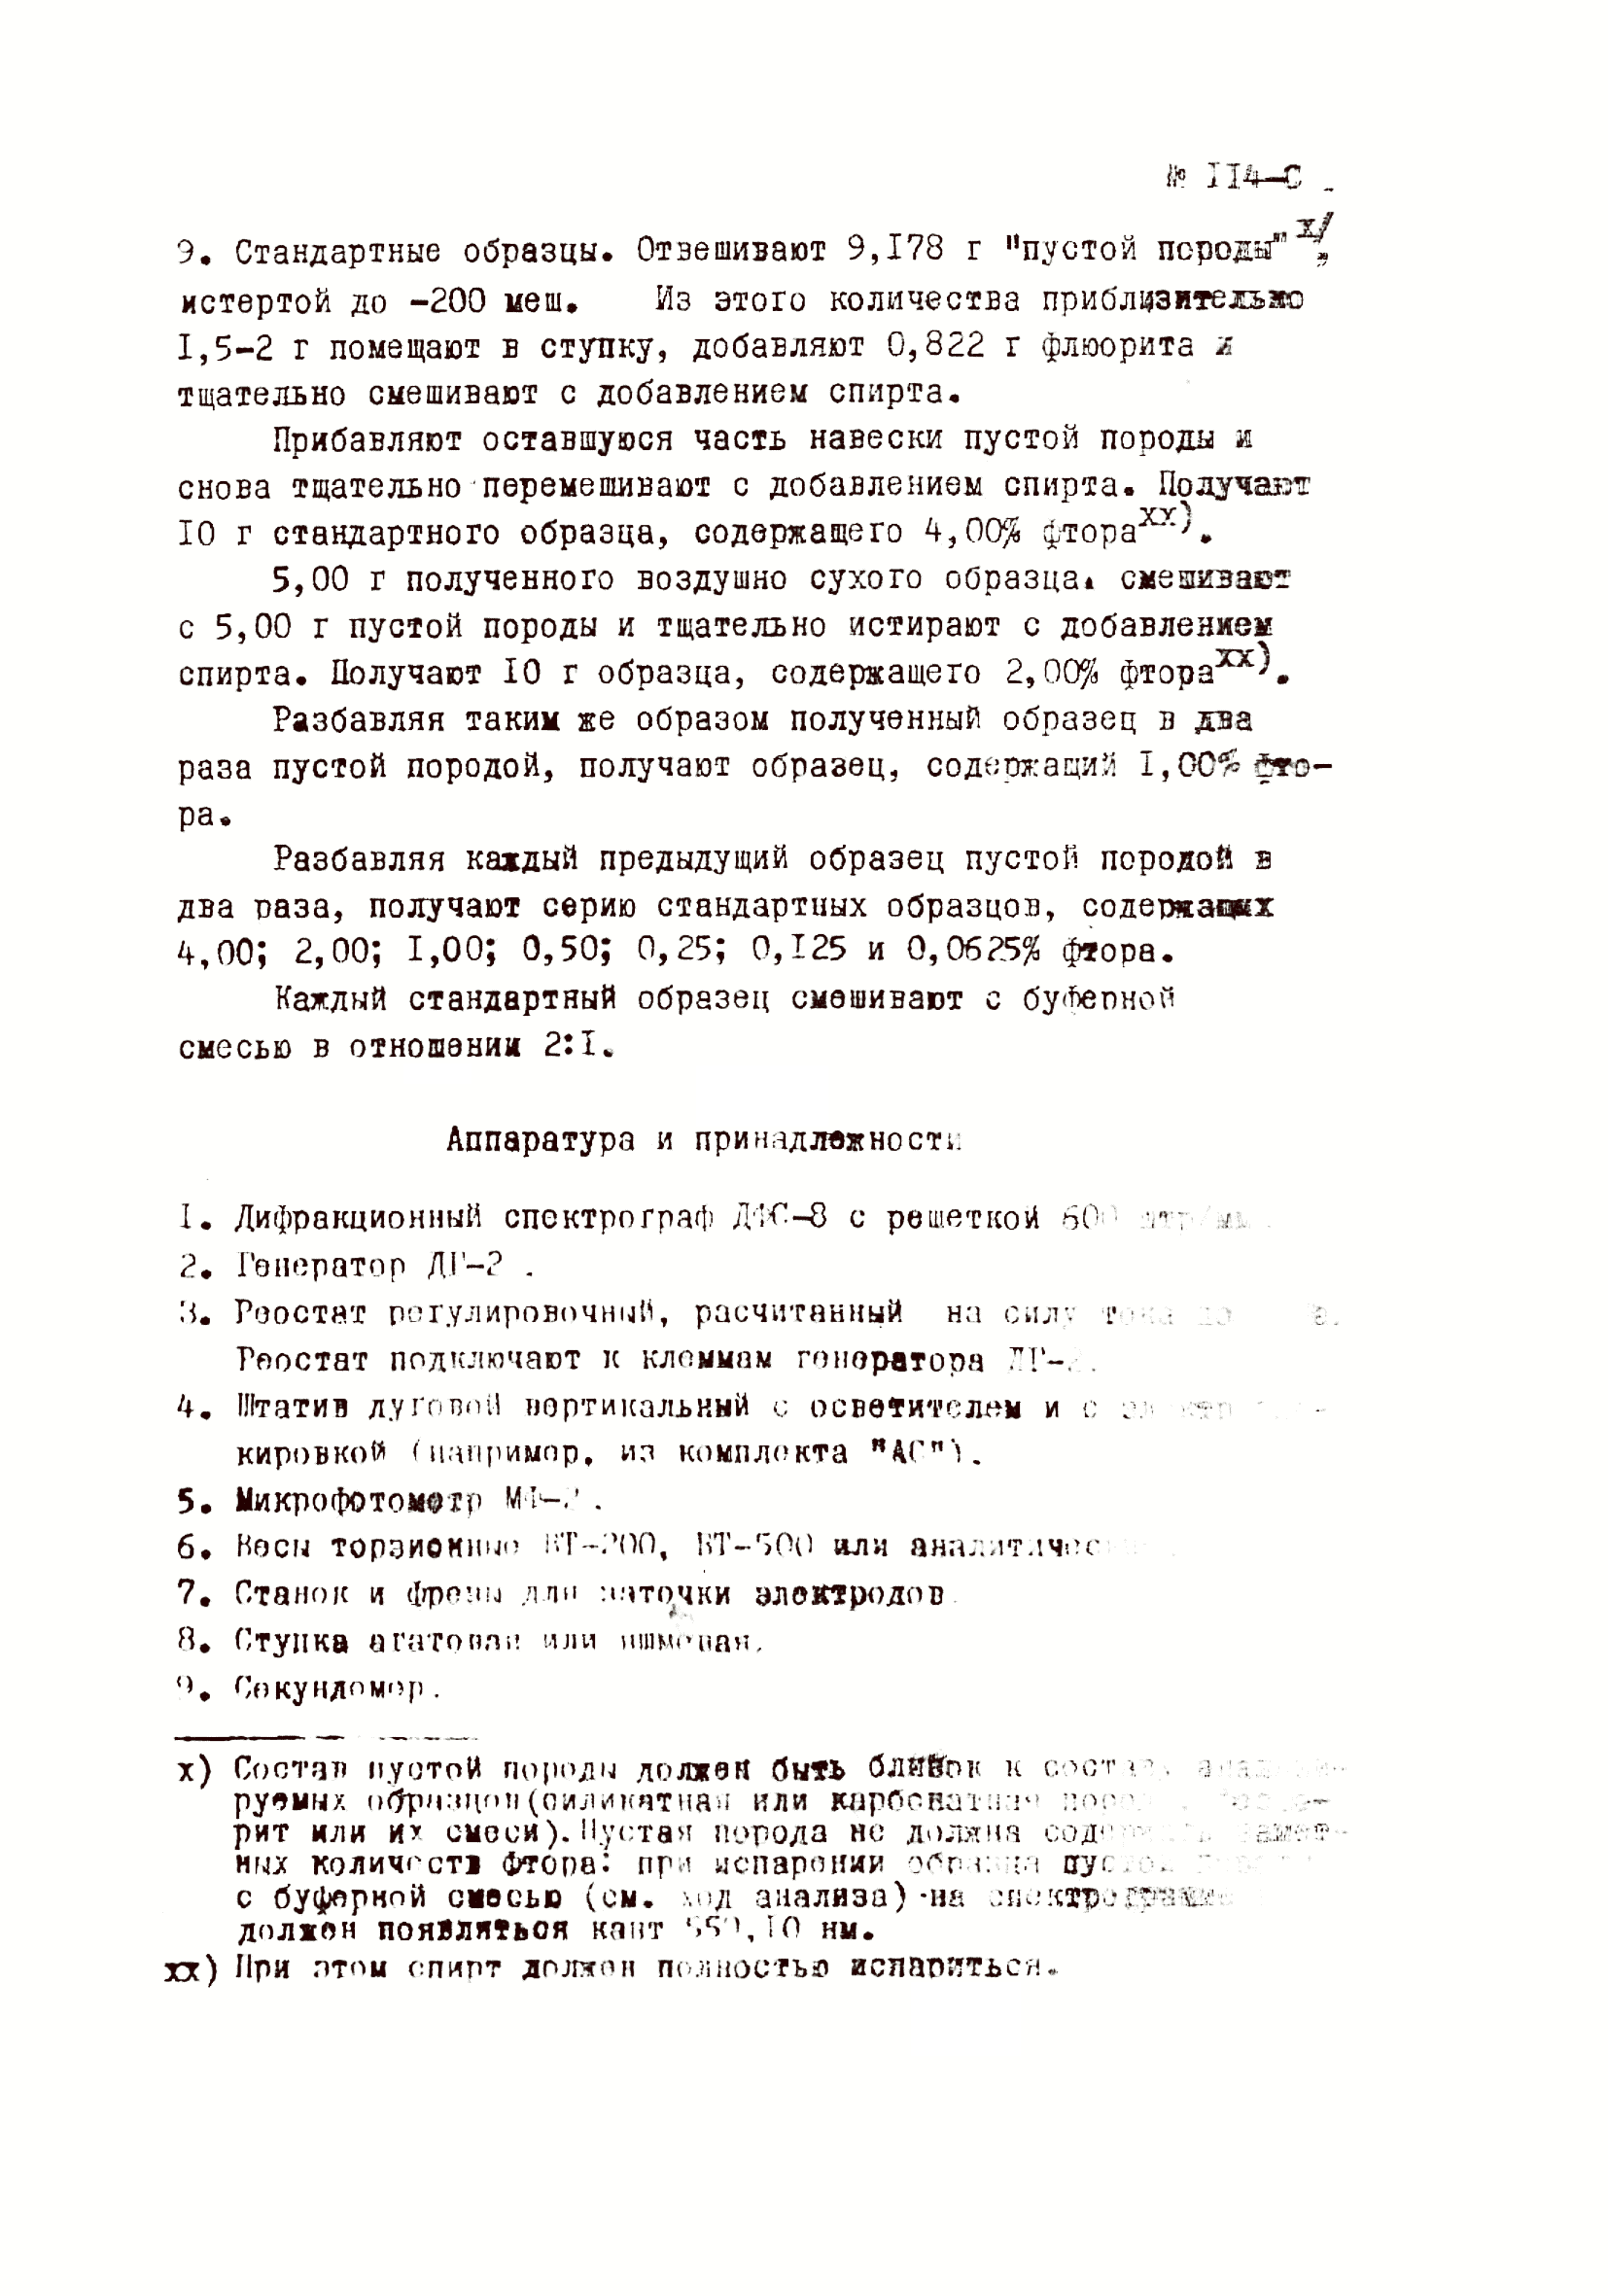 Инструкция НСАМ 114-С